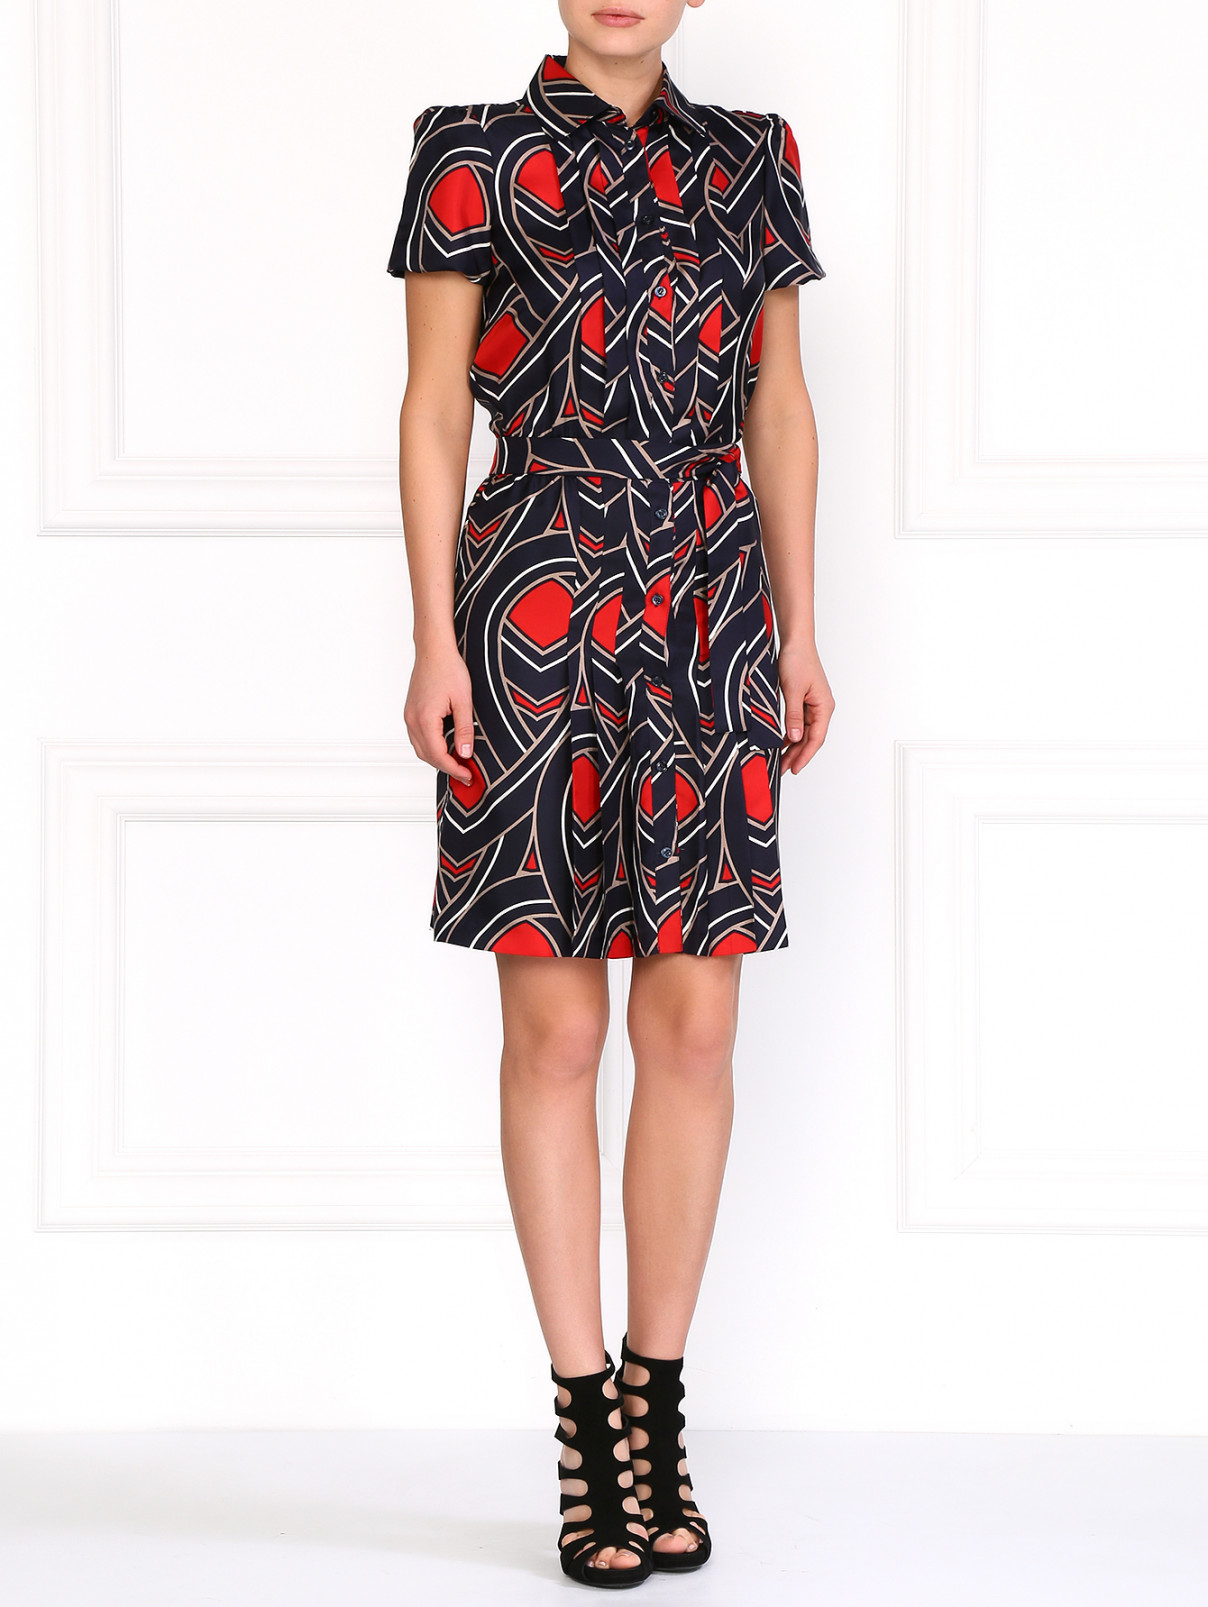 Шелковое платье с графичным принтом Moschino Cheap&Chic  –  Модель Общий вид  – Цвет:  Узор